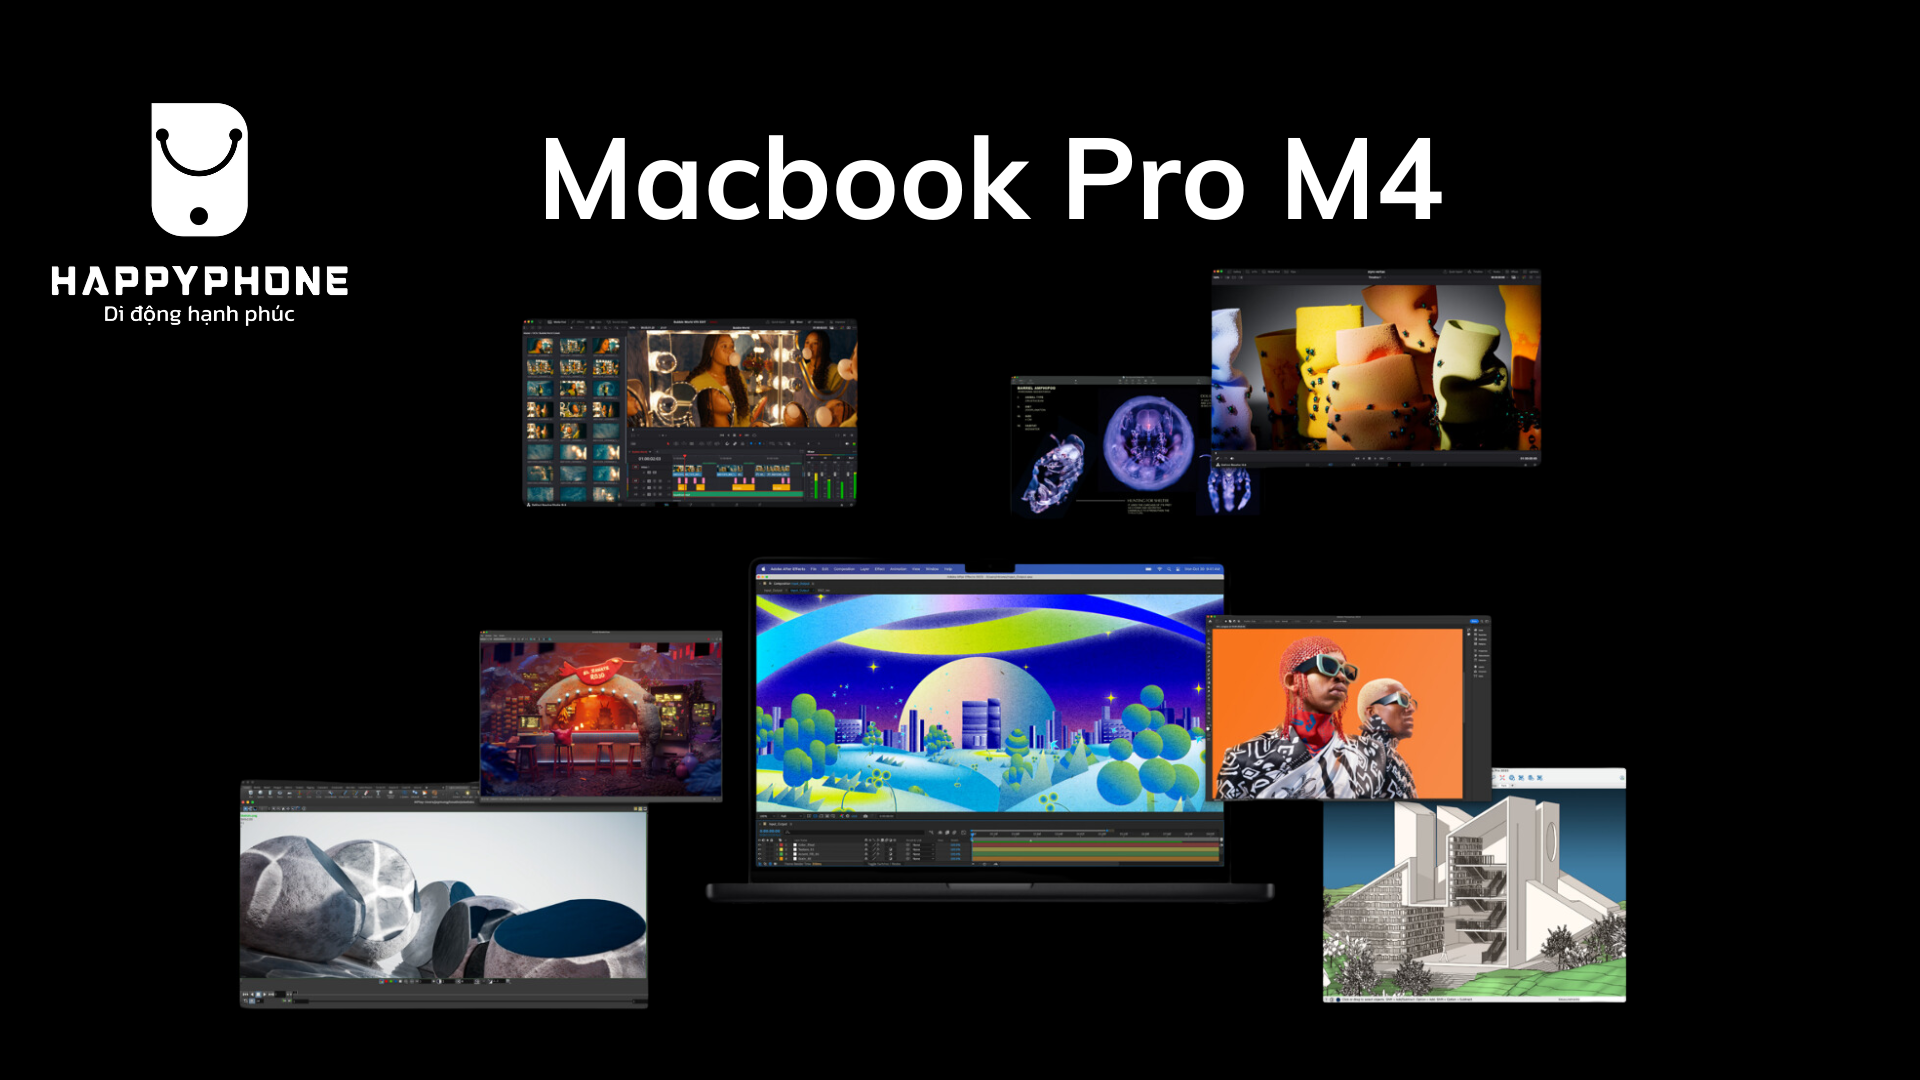 Màn hình Macbook Pro M4 được dự đoán sẽ được trang bị công nghệ vượt trội